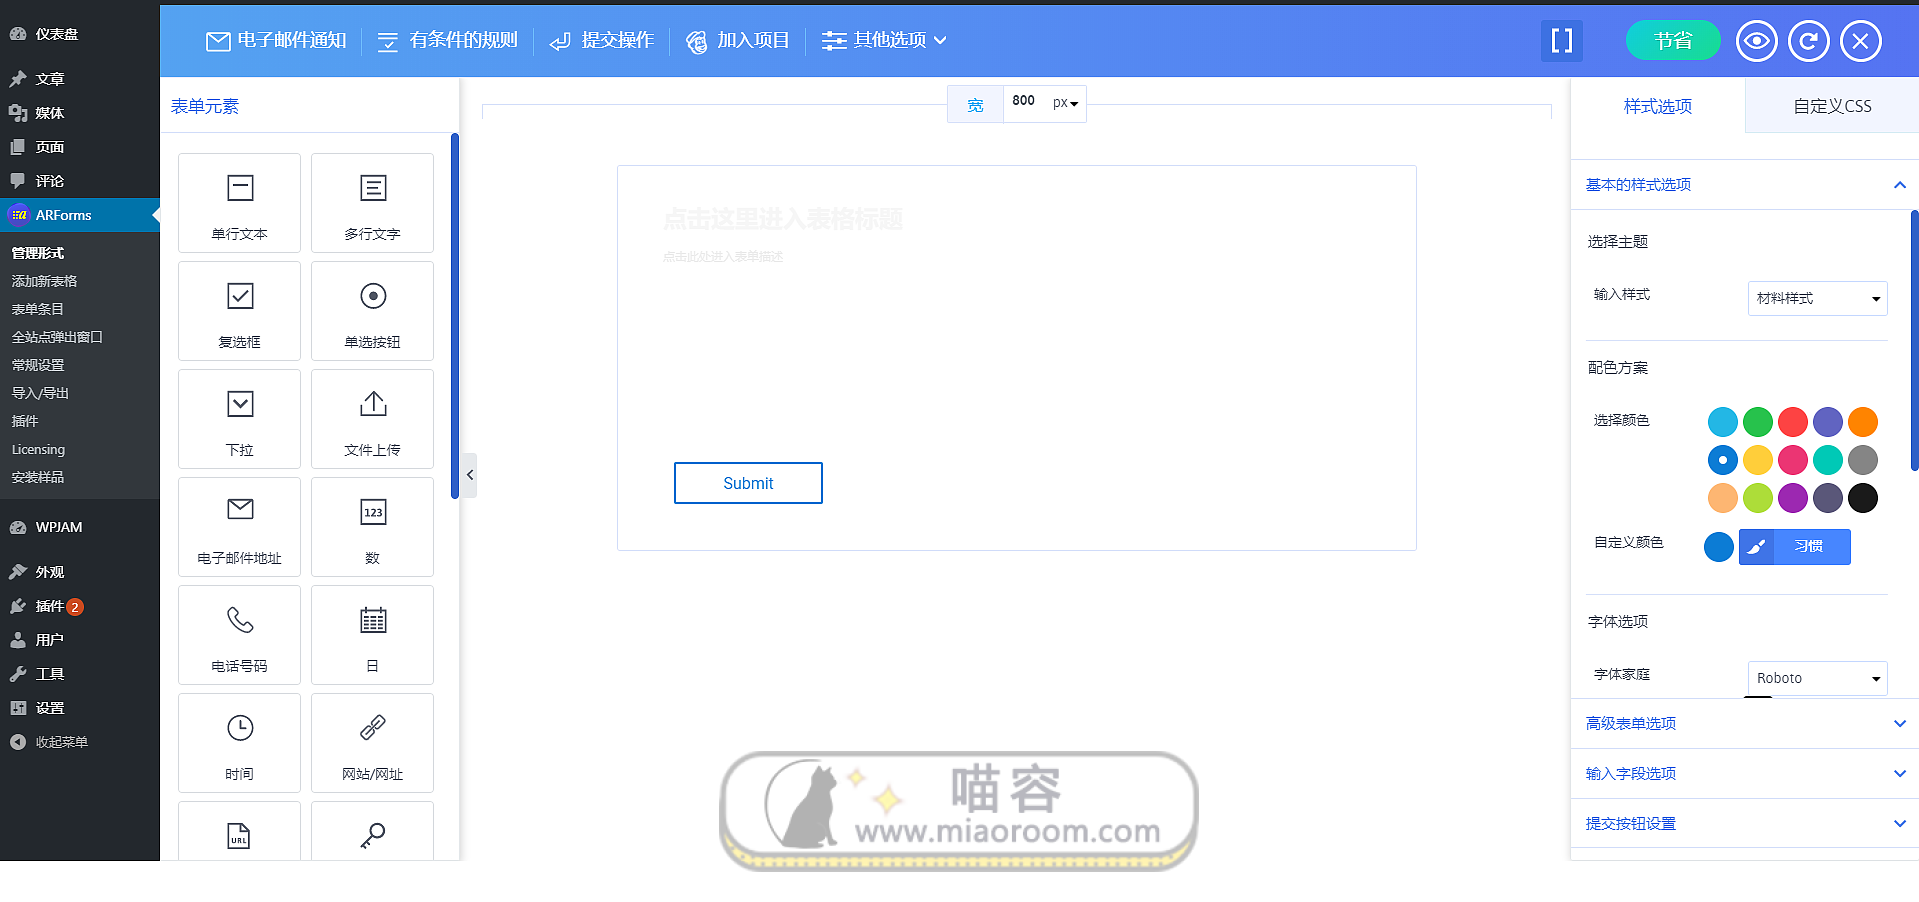 「WP外掛」 自適應表單 ARForms v4.0.3 進階版 破解專業版 【中文漢化】